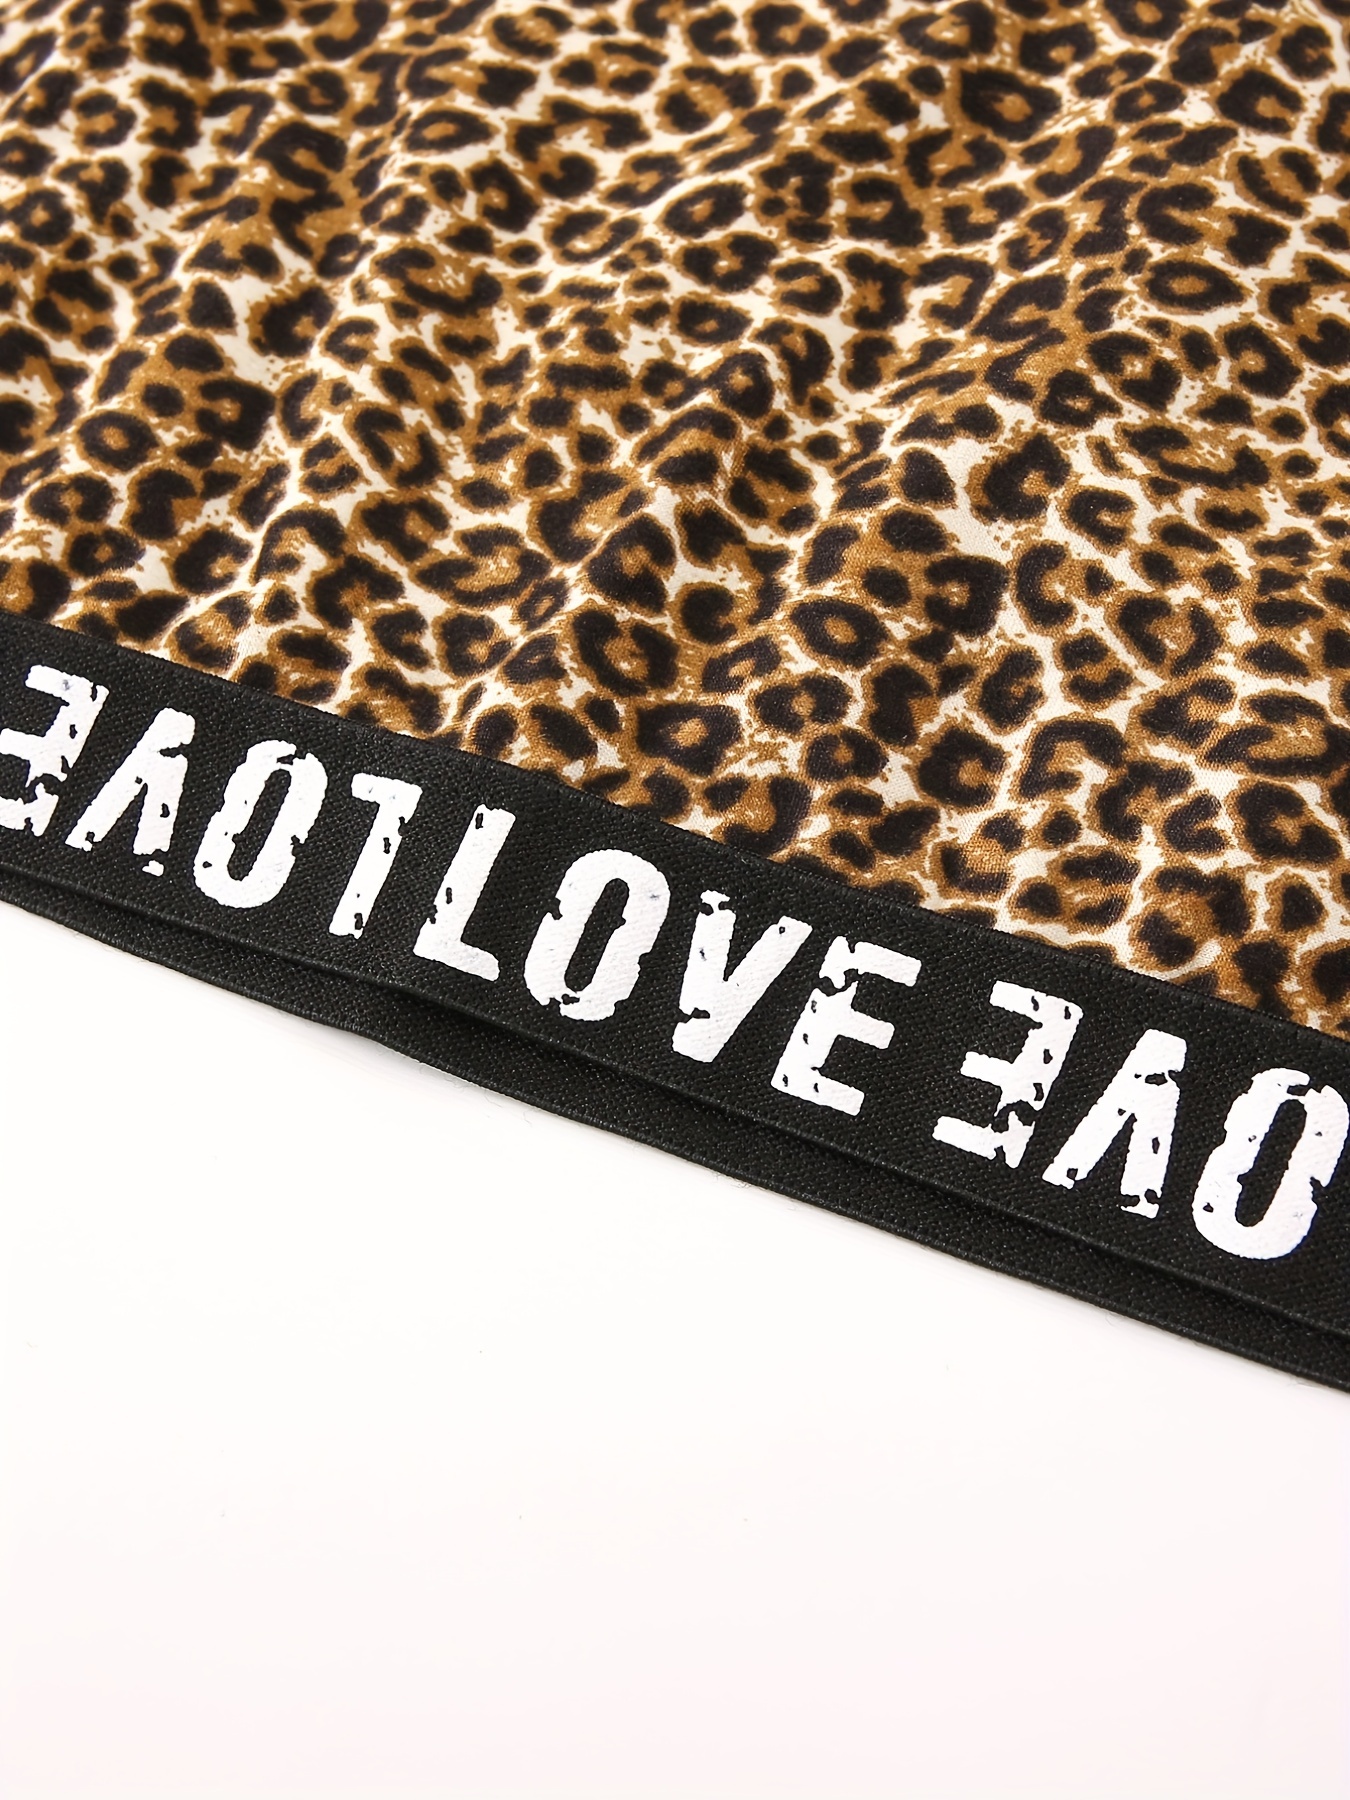 Plus Size Casual Bra, Women's Plus Leopard Print Contrast Lace High Stretch  Rhinestone Bra